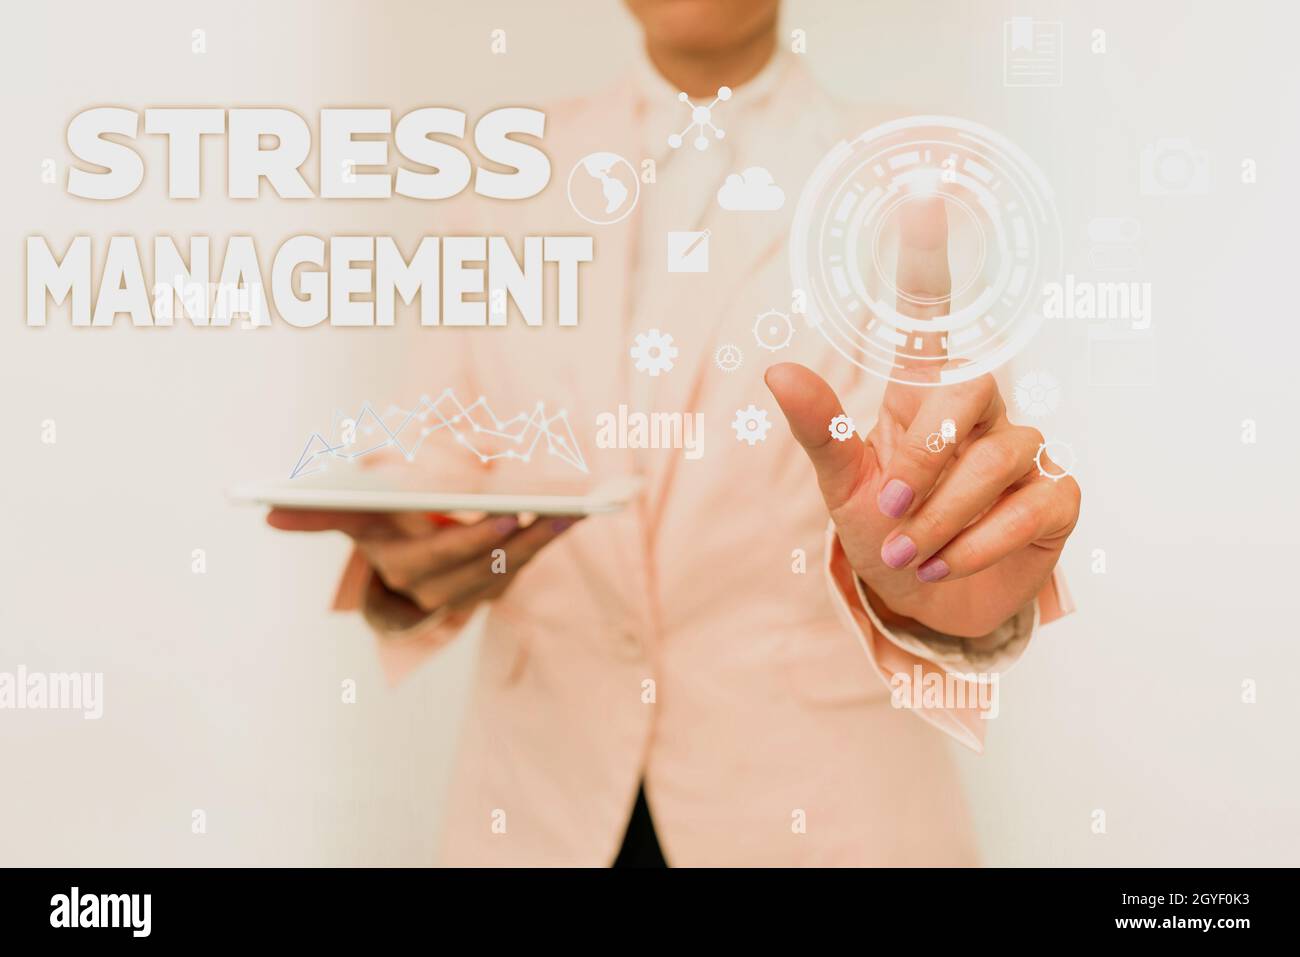 Handschrift Text Stressmanagement, Business Ansatz Lernen Wege des Vergehens und Denkens, die Stress reduzieren Business Woman Touching Digital Data O Stockfoto